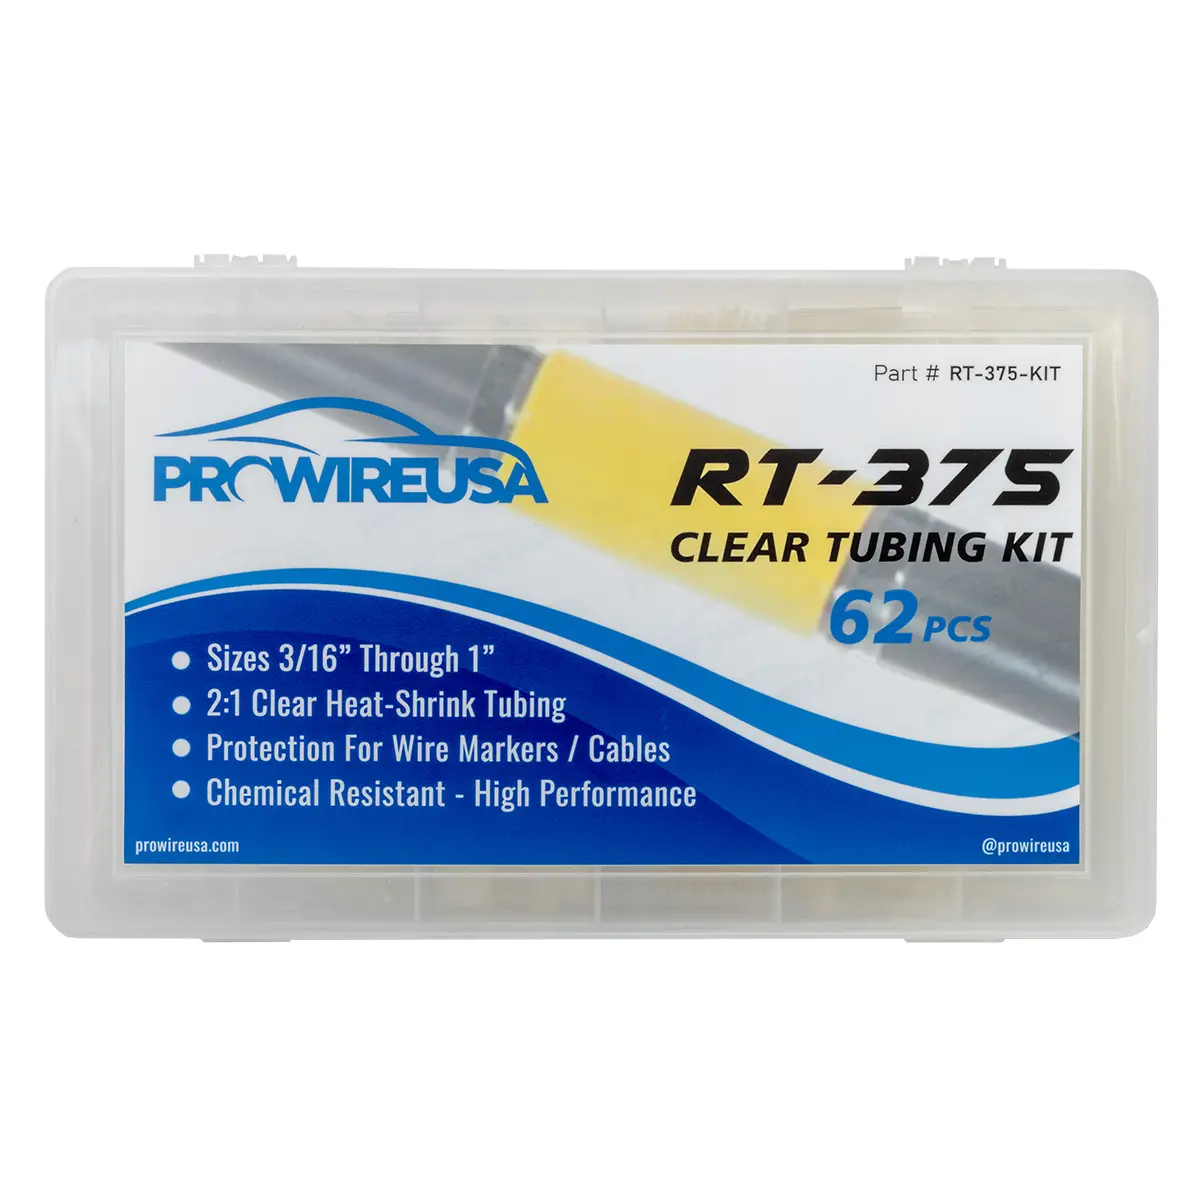 RT-375 CLEAR TUBING KIT 62PCS